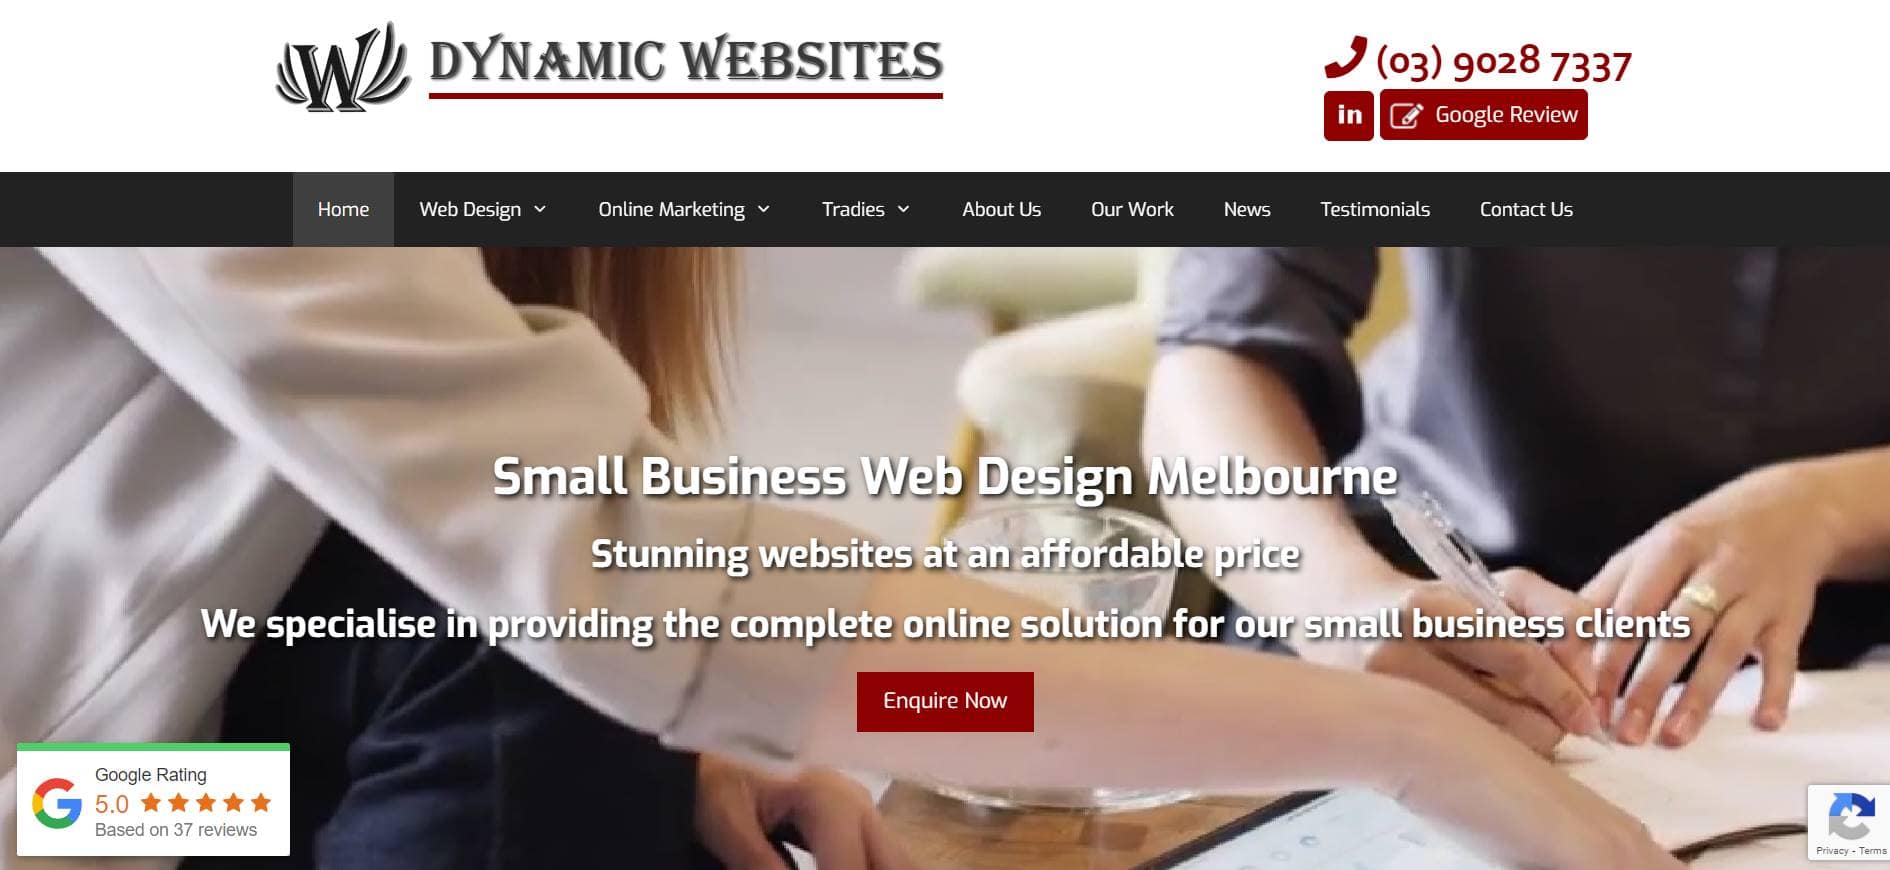 dynamic websites website designers melbourne